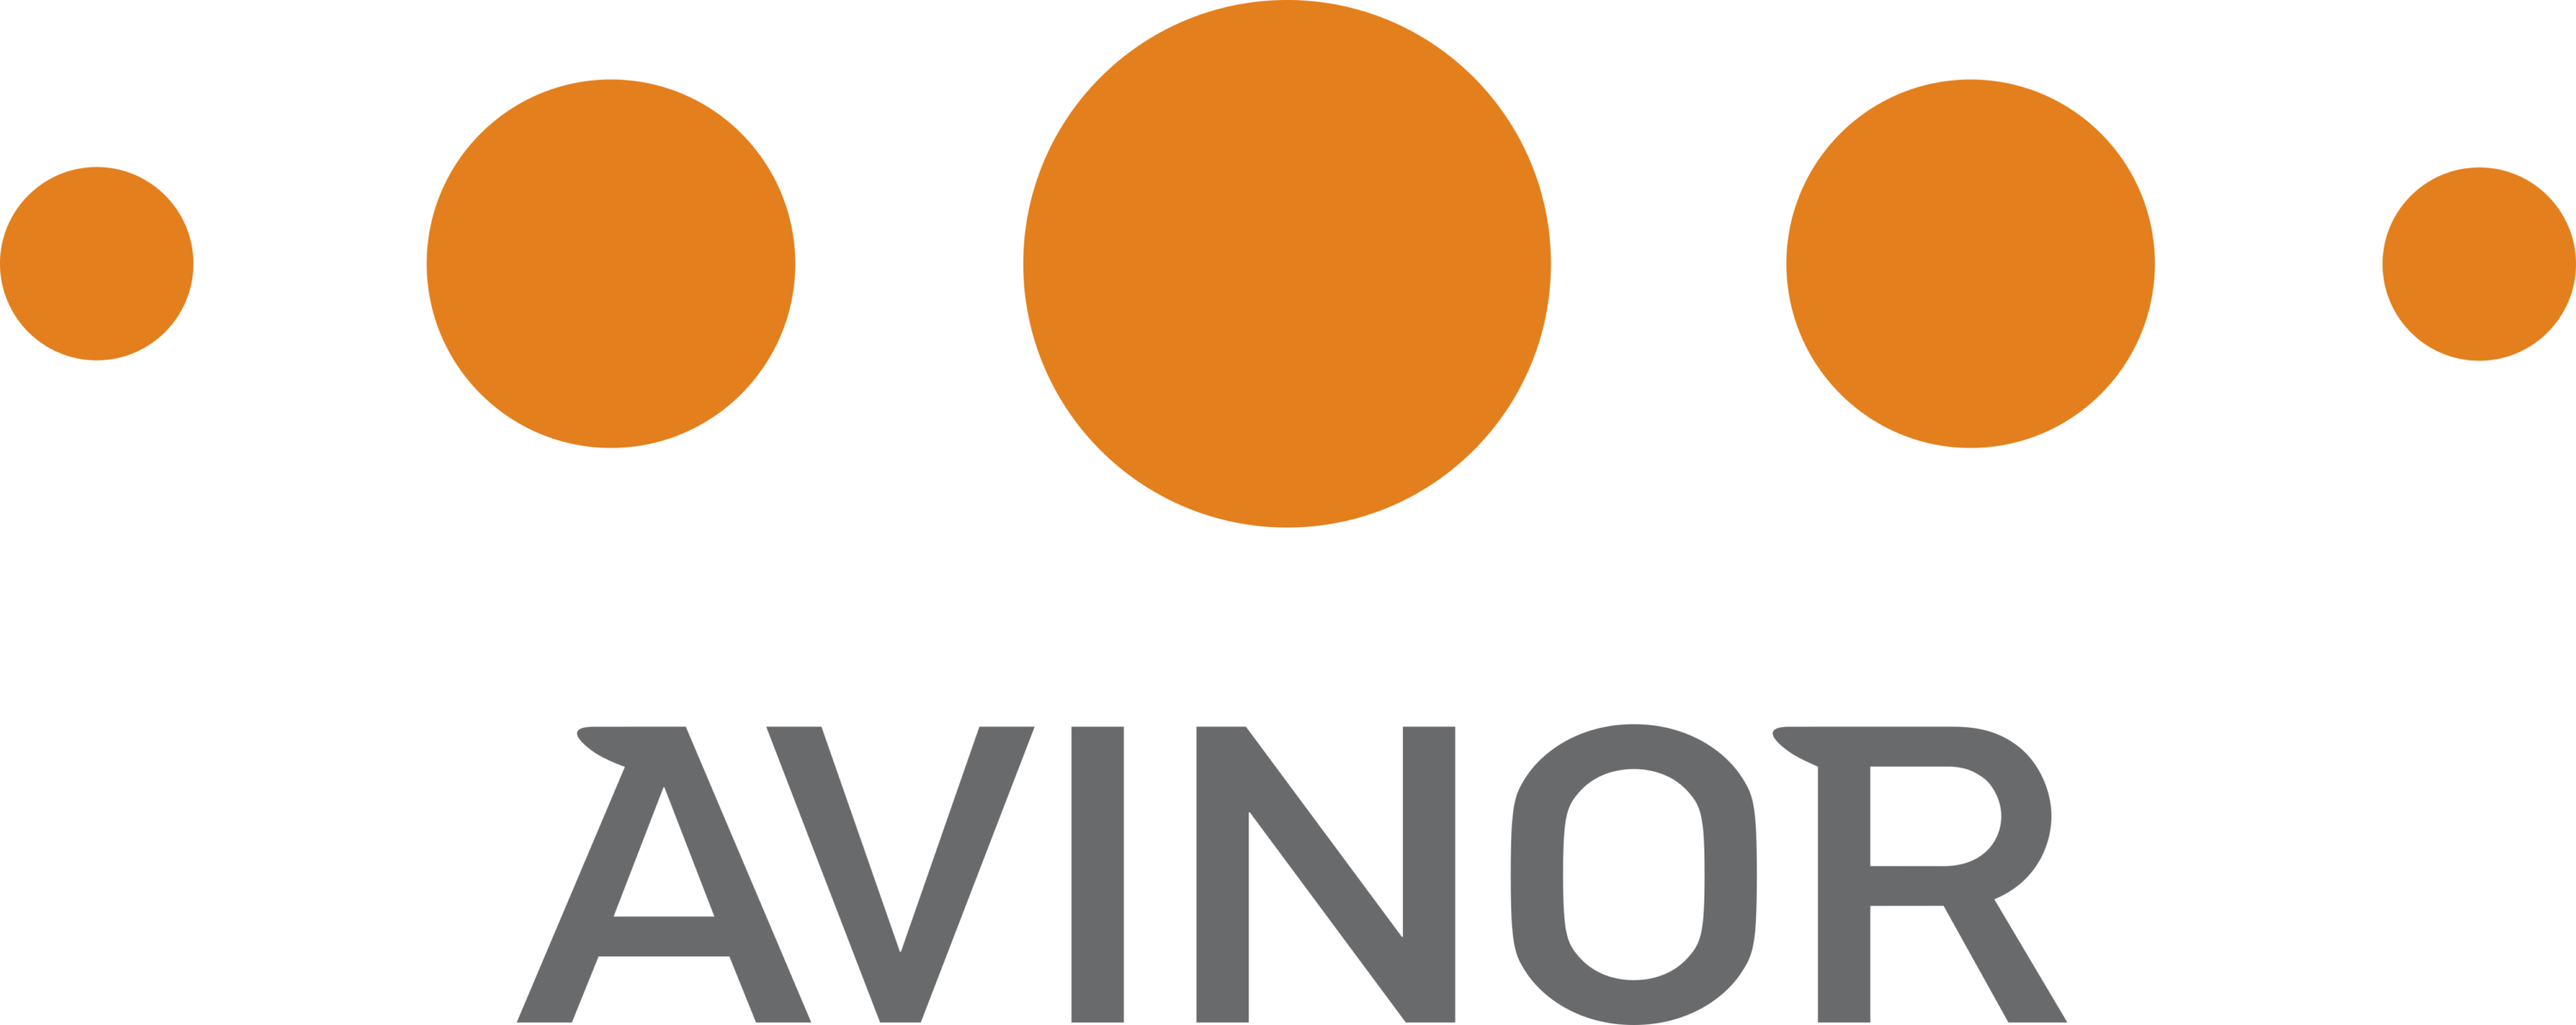 Avinor Logo old